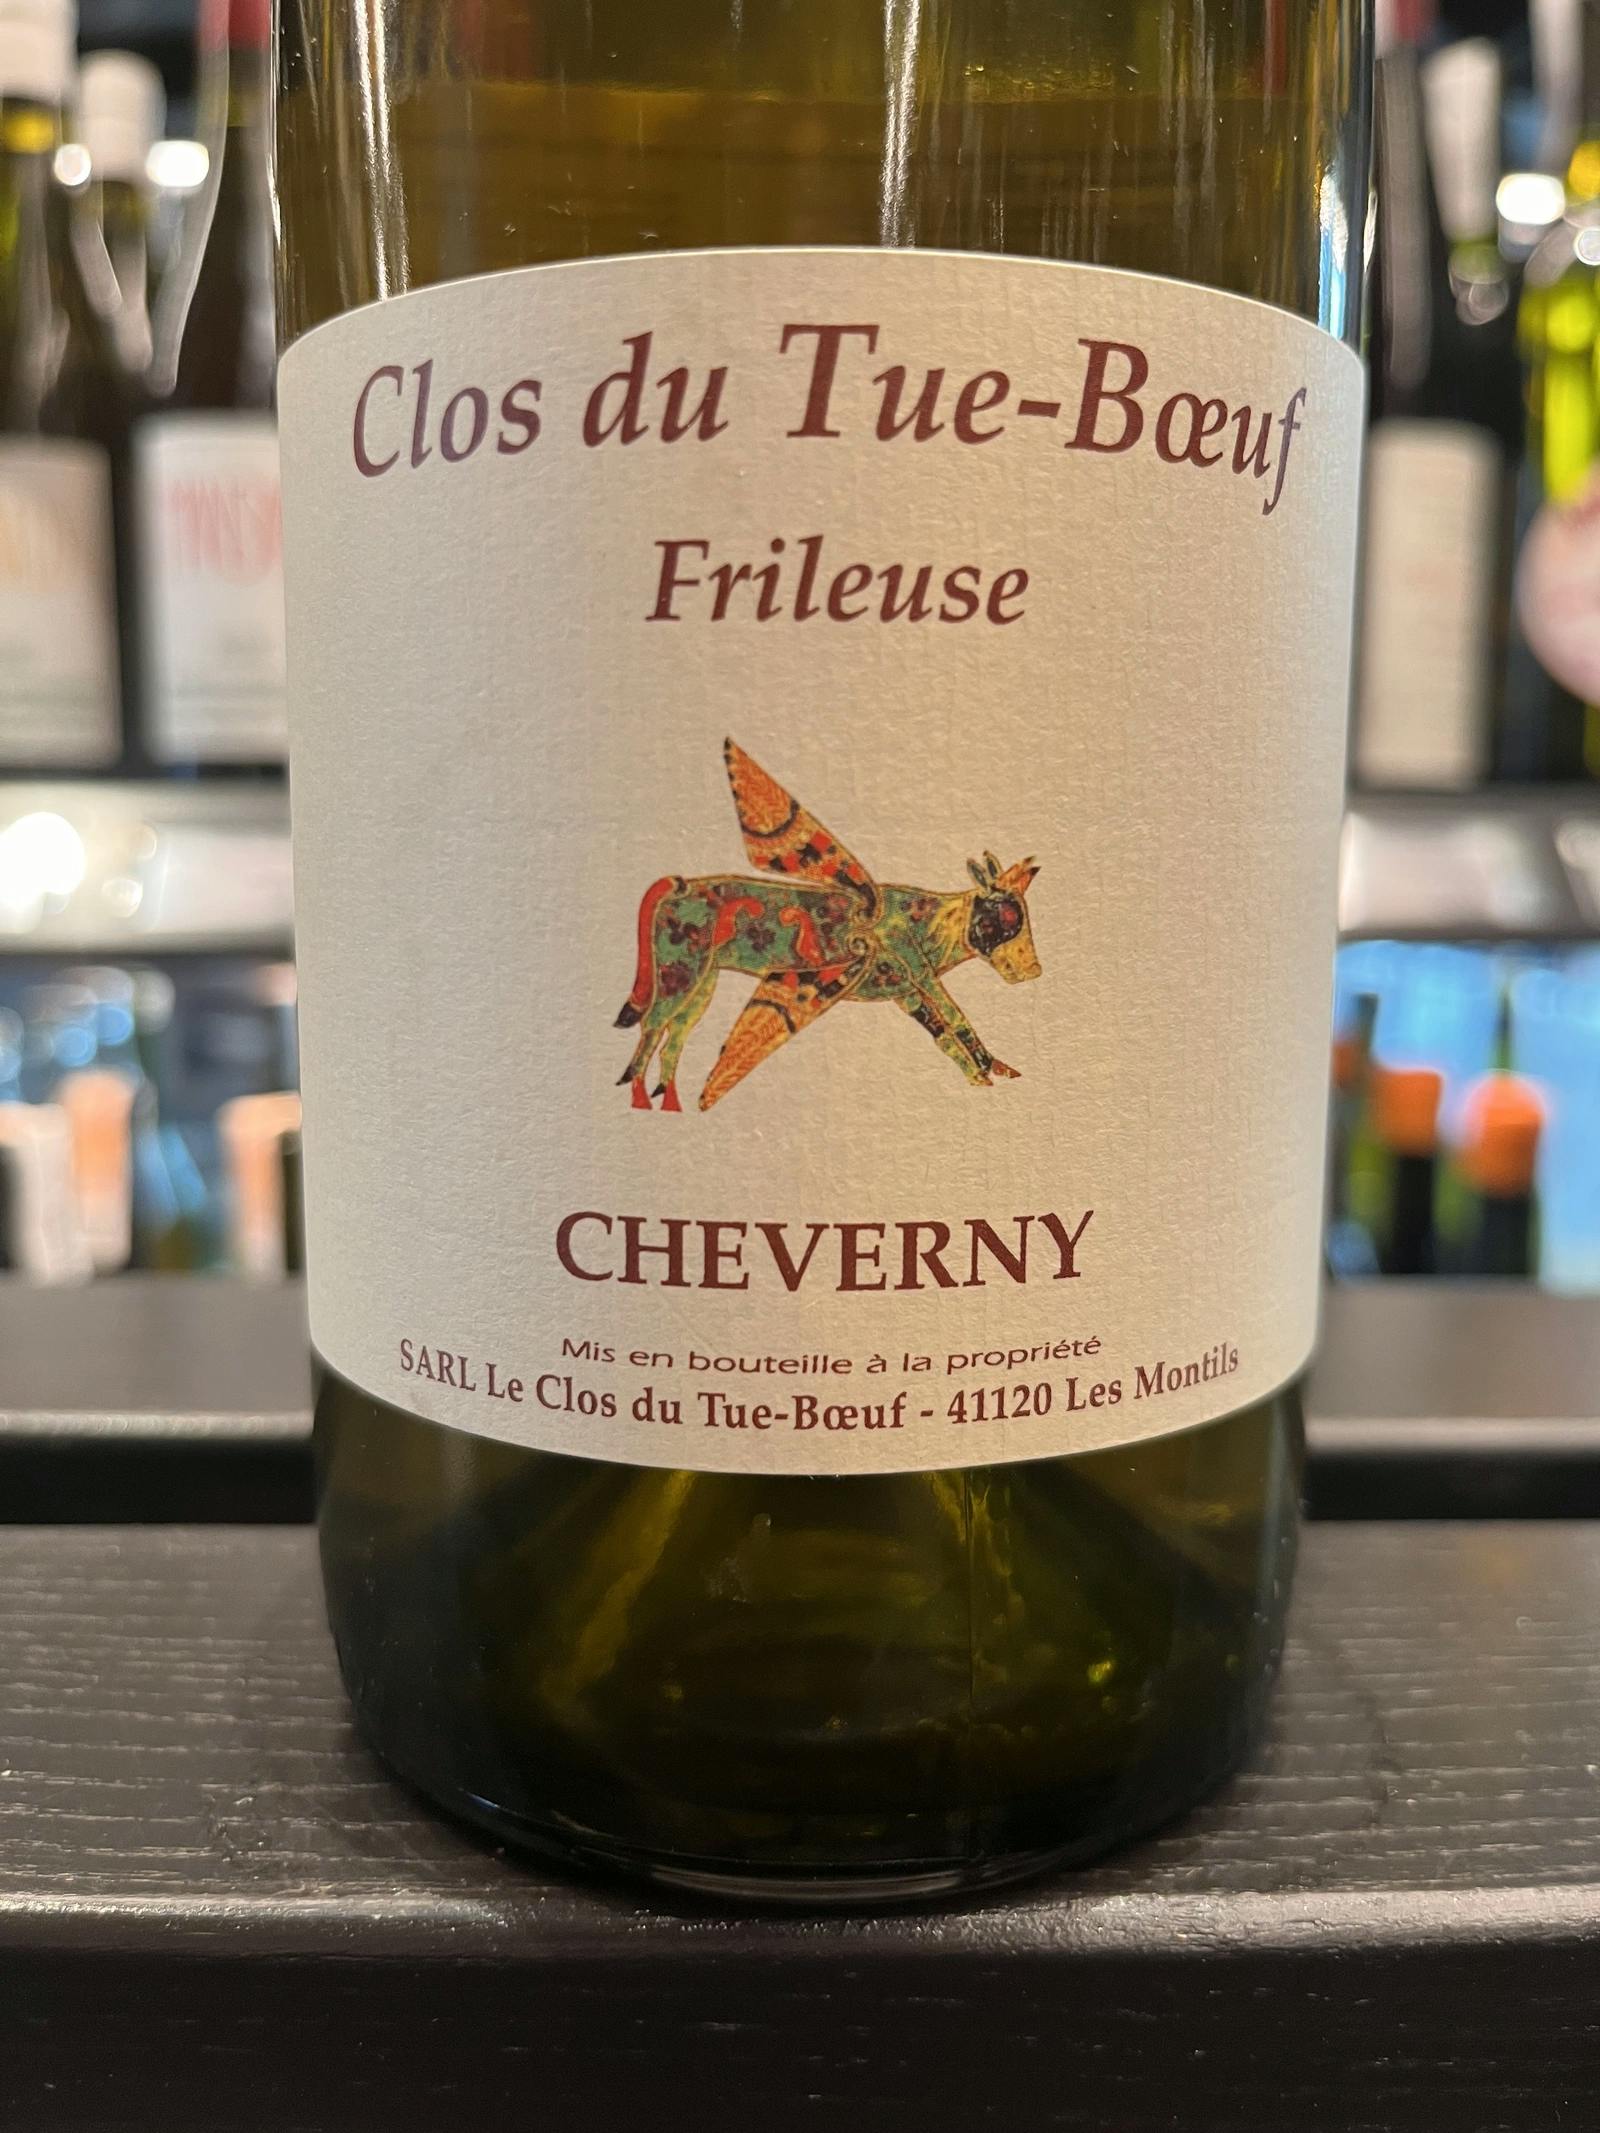 Clos du Tue-Boeuf Cheverny Frileuse 2018